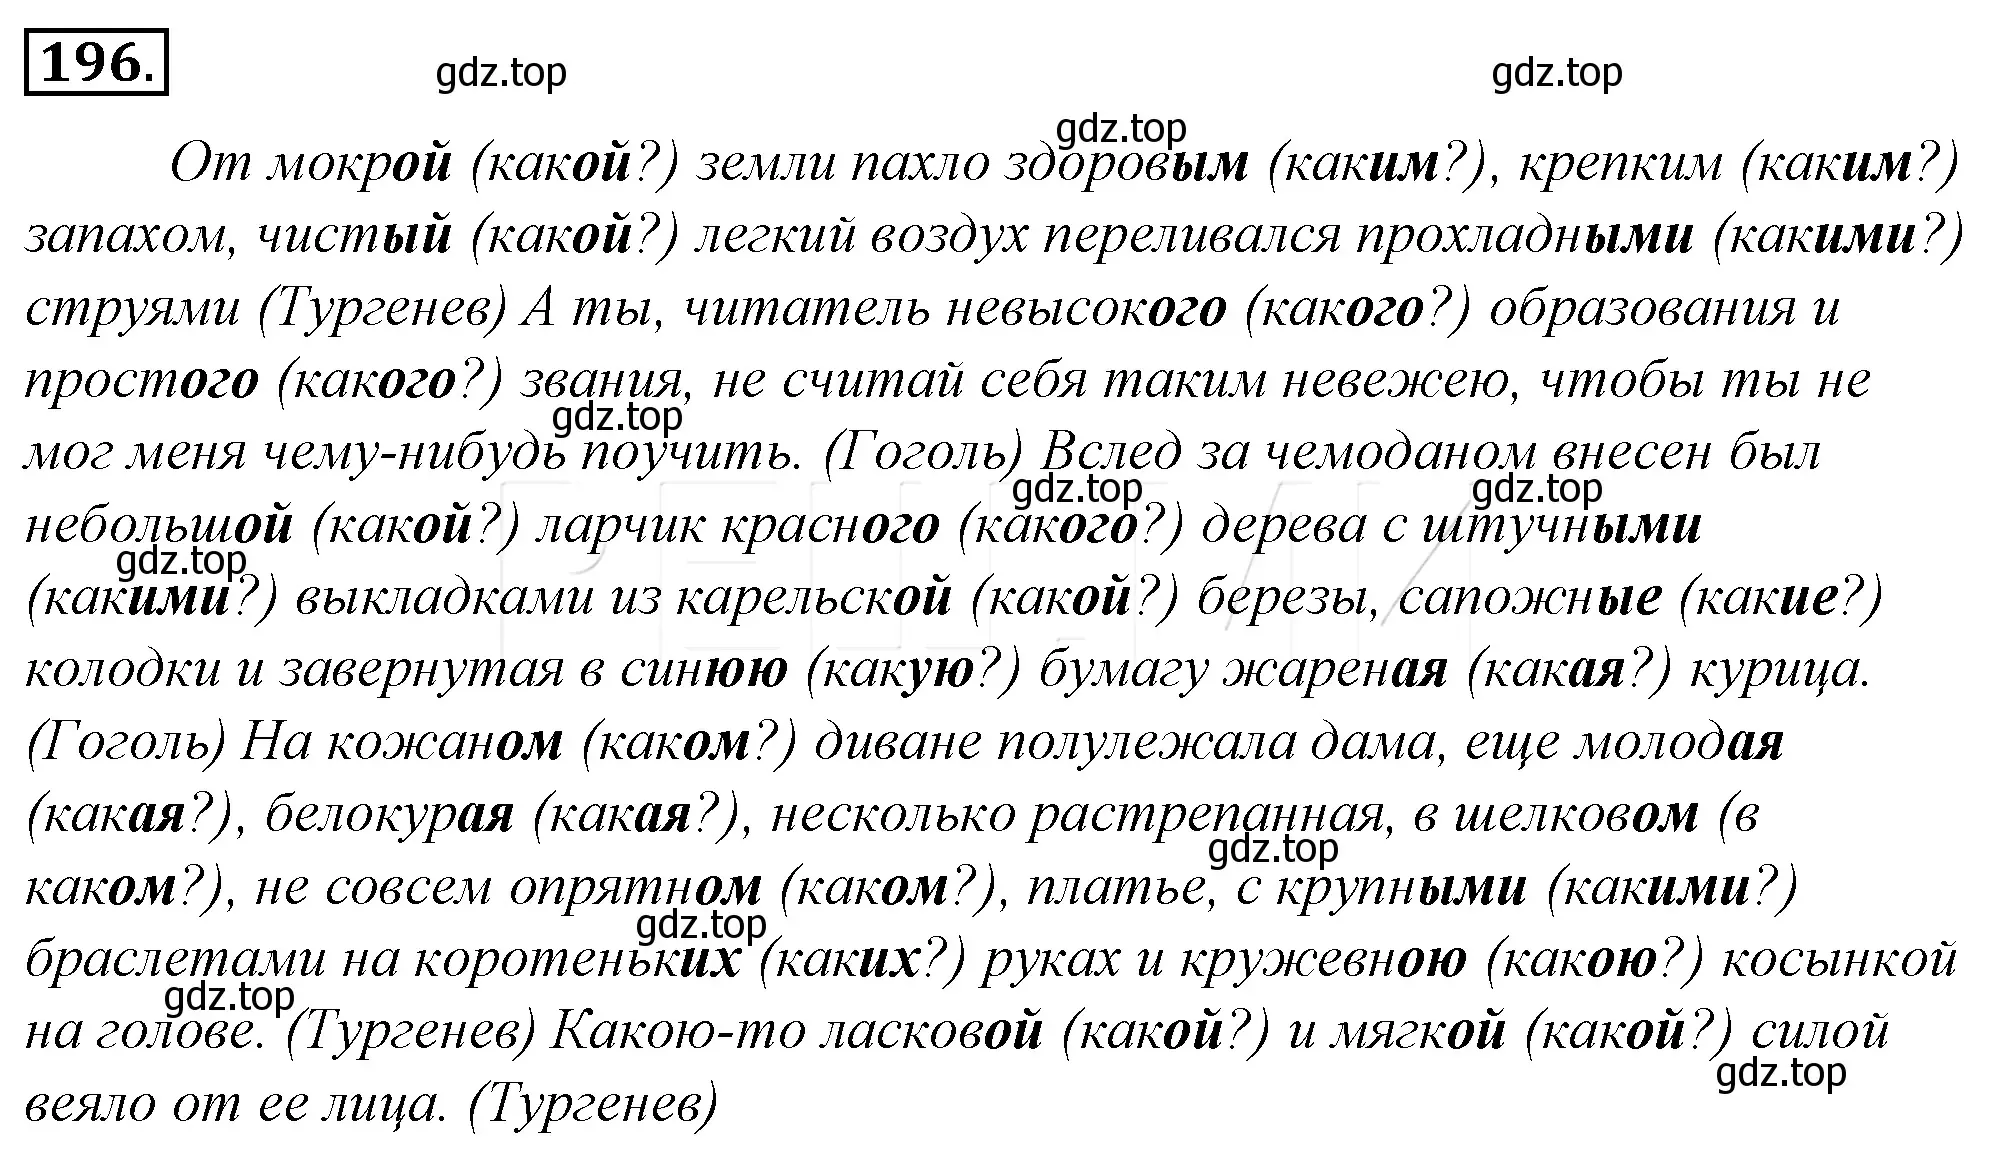 Решение 4. номер 220 (страница 207) гдз по русскому языку 10-11 класс Гольцова, Шамшин, учебник 1 часть